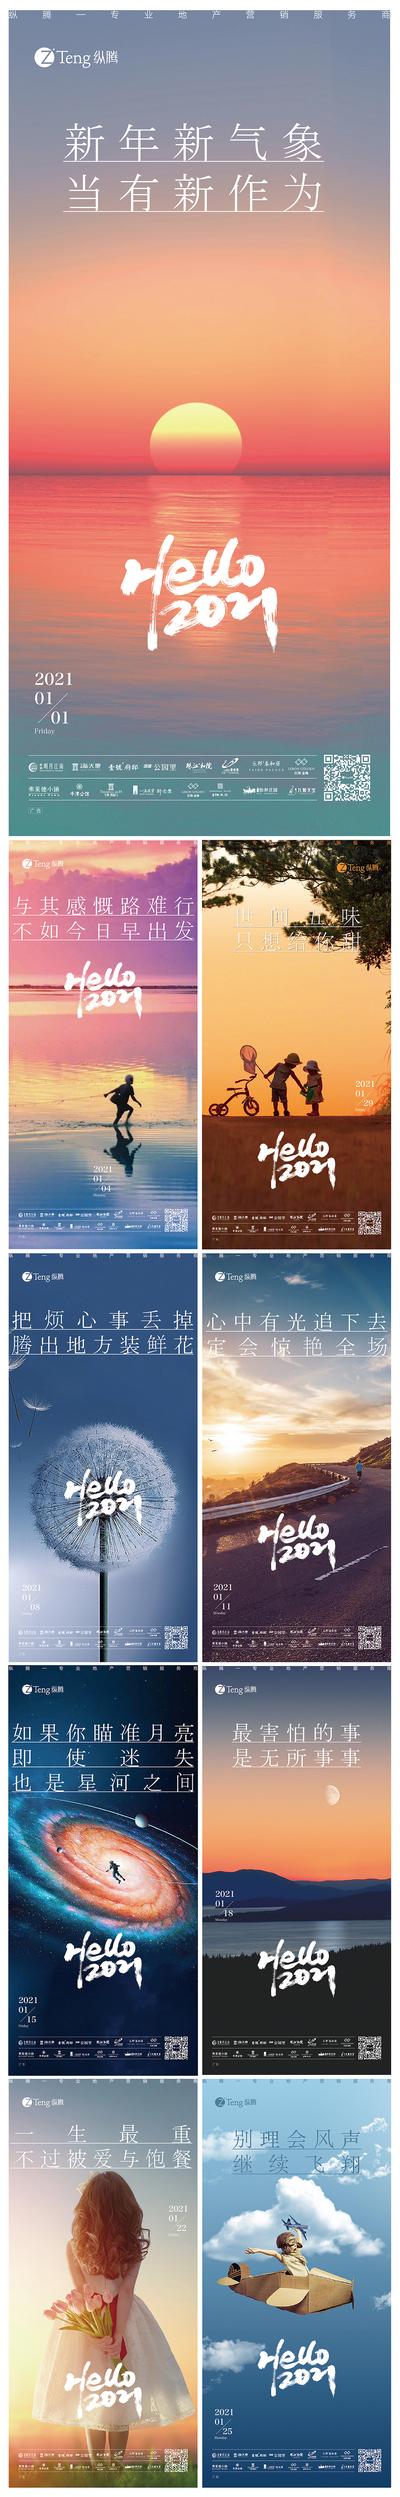 南门网 海报 中国传统节日 元旦 新年 寄语 系列